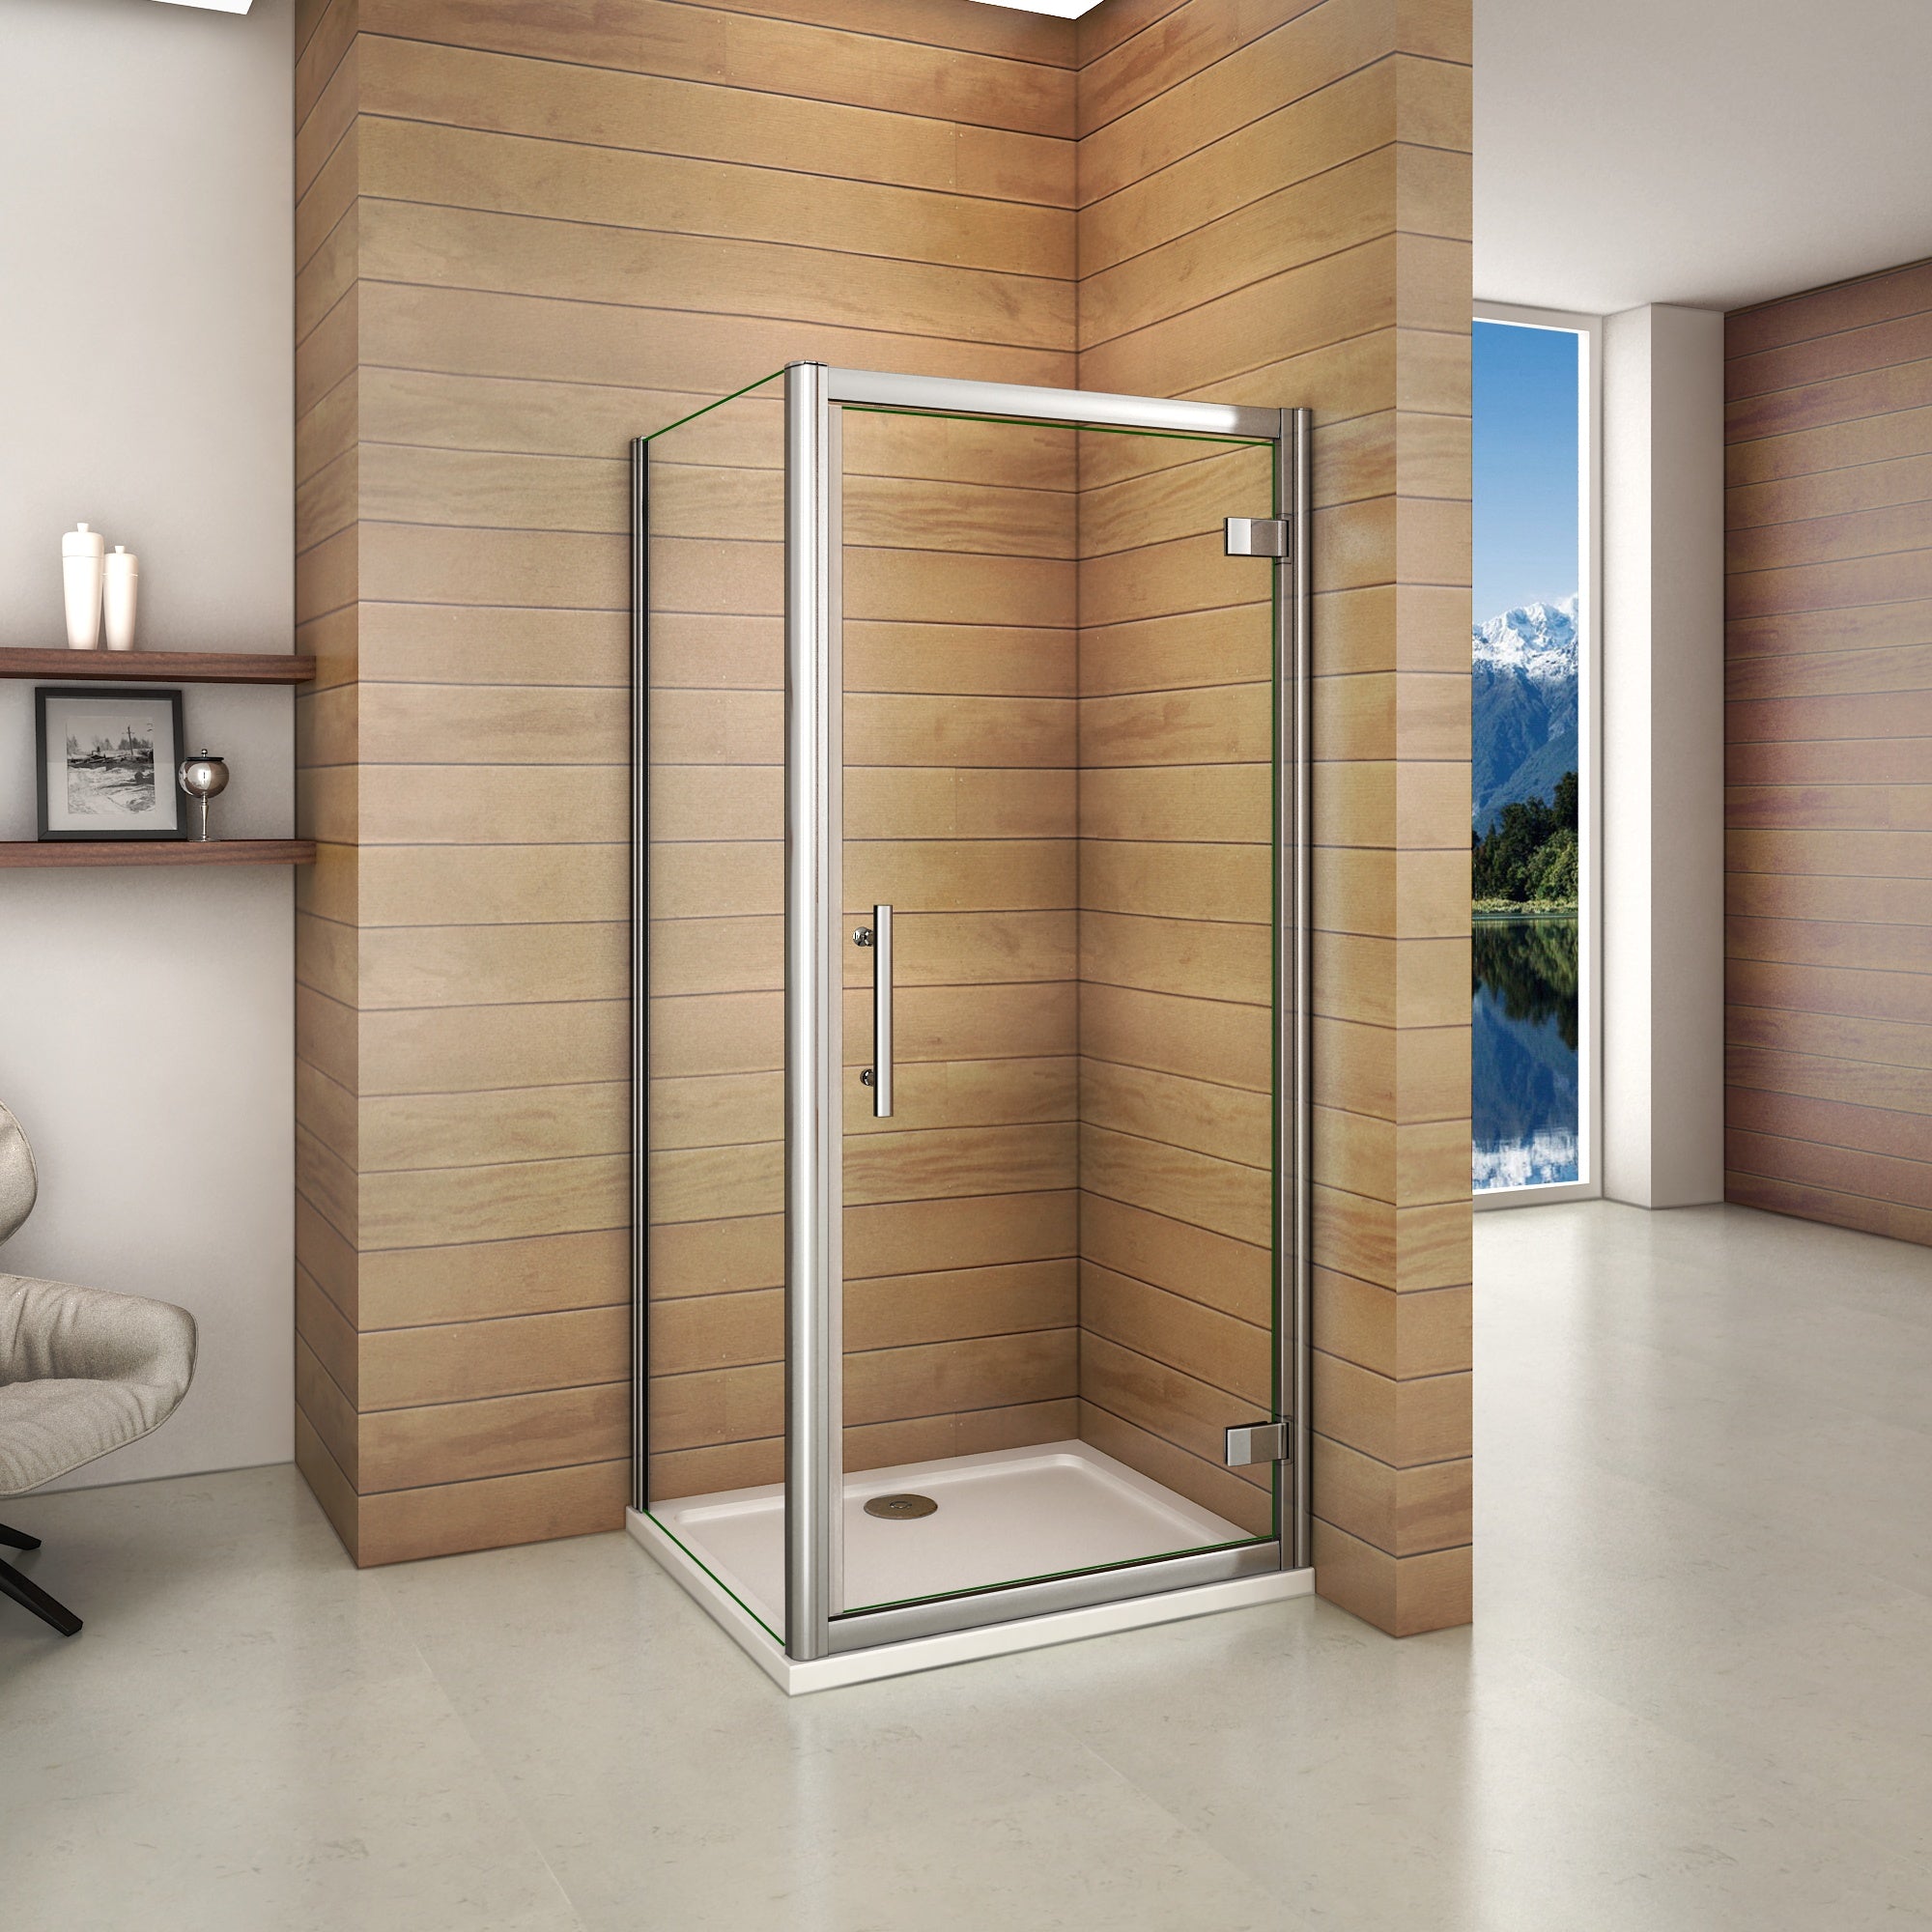 aica-cabine-de-douche-à-charnière-Aica cabine de douche 185cm porte de pivotante avec une paroi de douche -Livraison gratuite